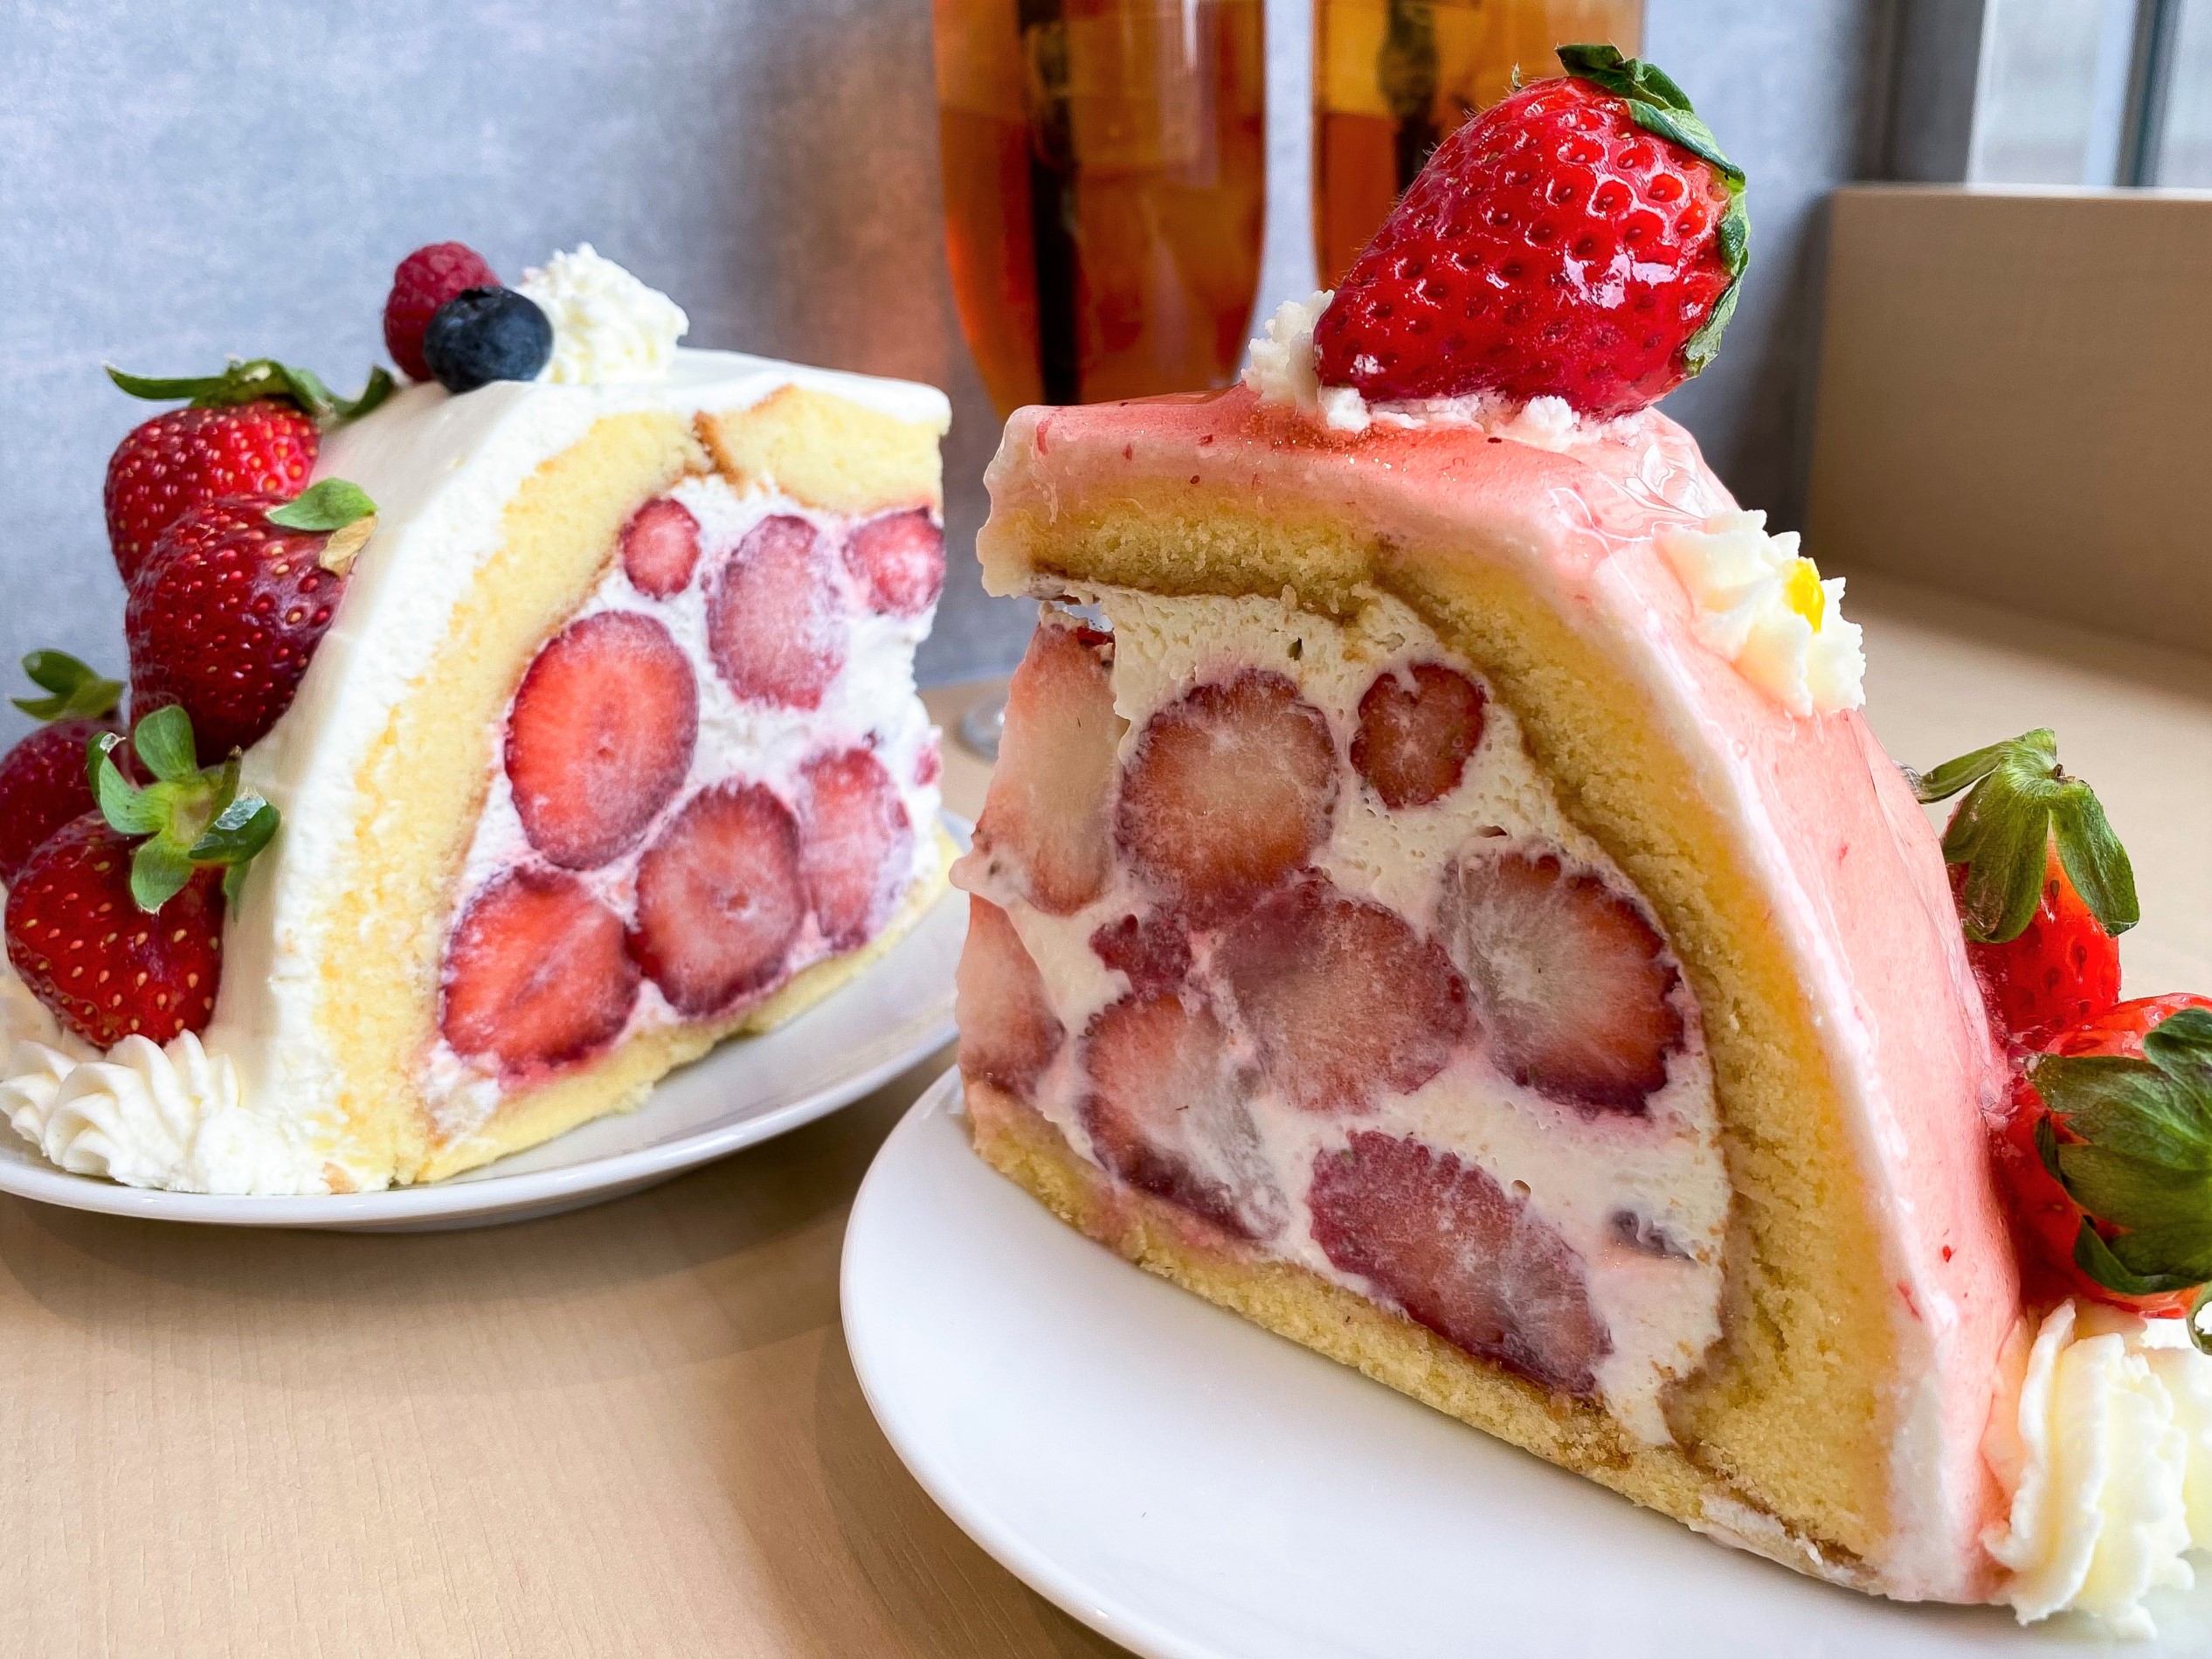 果実びより 大人気断面萌えケーキが北九州 小倉駅前アイムに